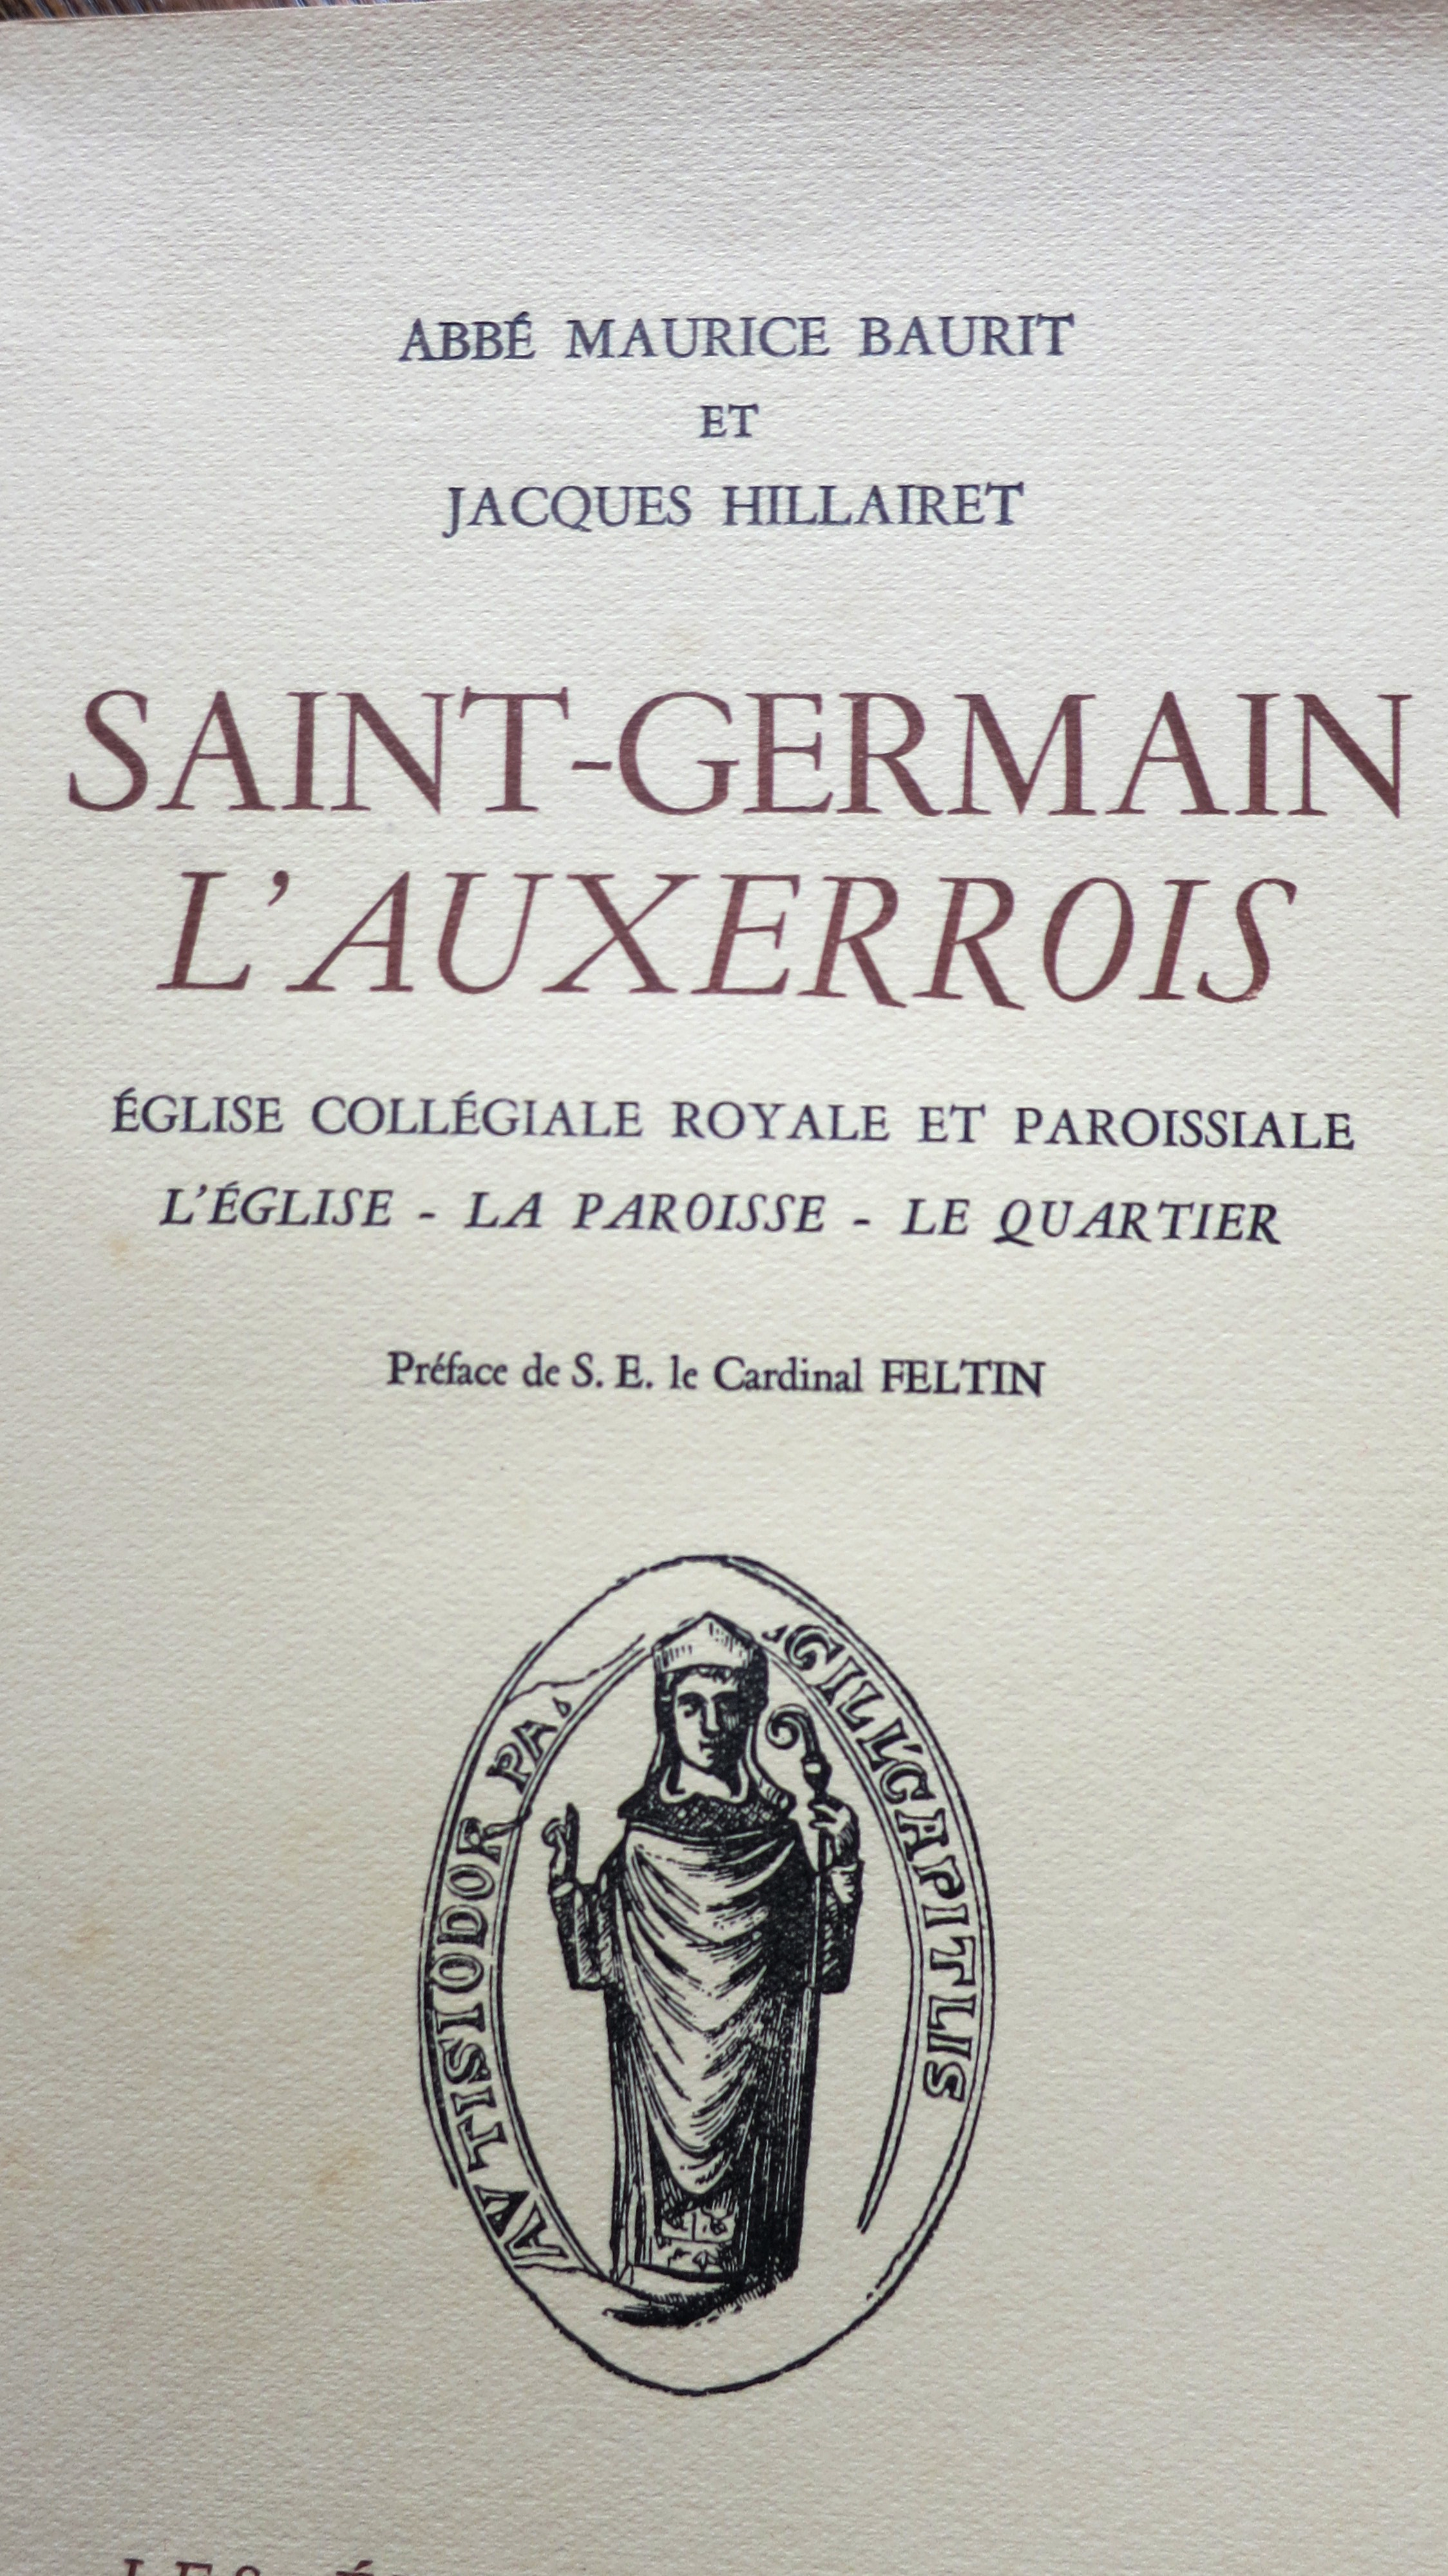 Saint Germain l'Auxerrois